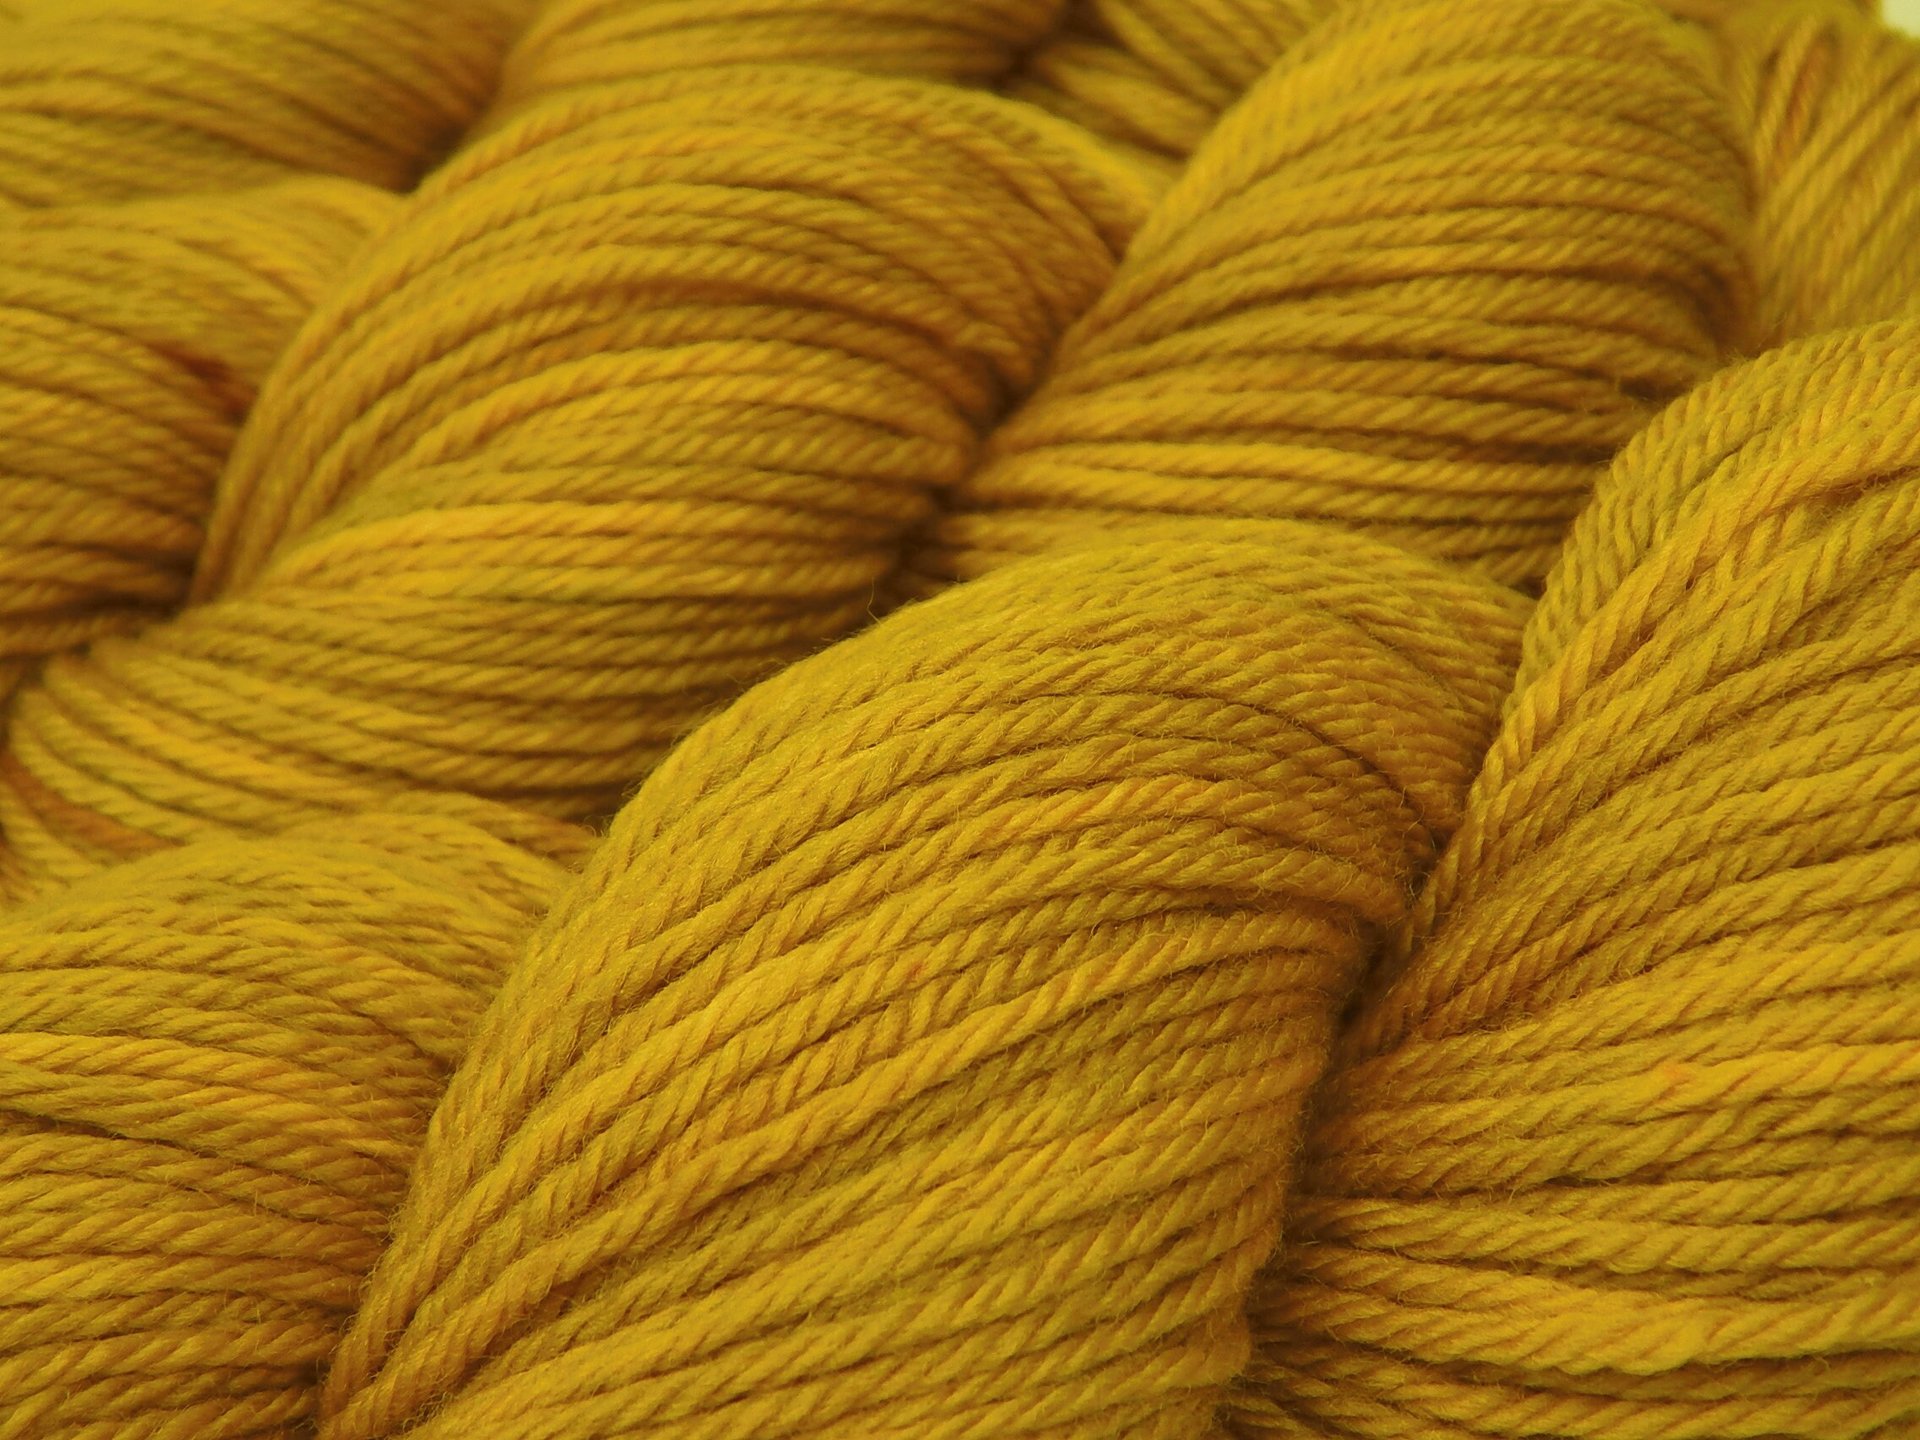 Hand Dyed Yarn, Worsted Weight Superwash Merino Wool - Honey Mustard - Yellow Gold Tonal Indie Dyer Knitting Yarn